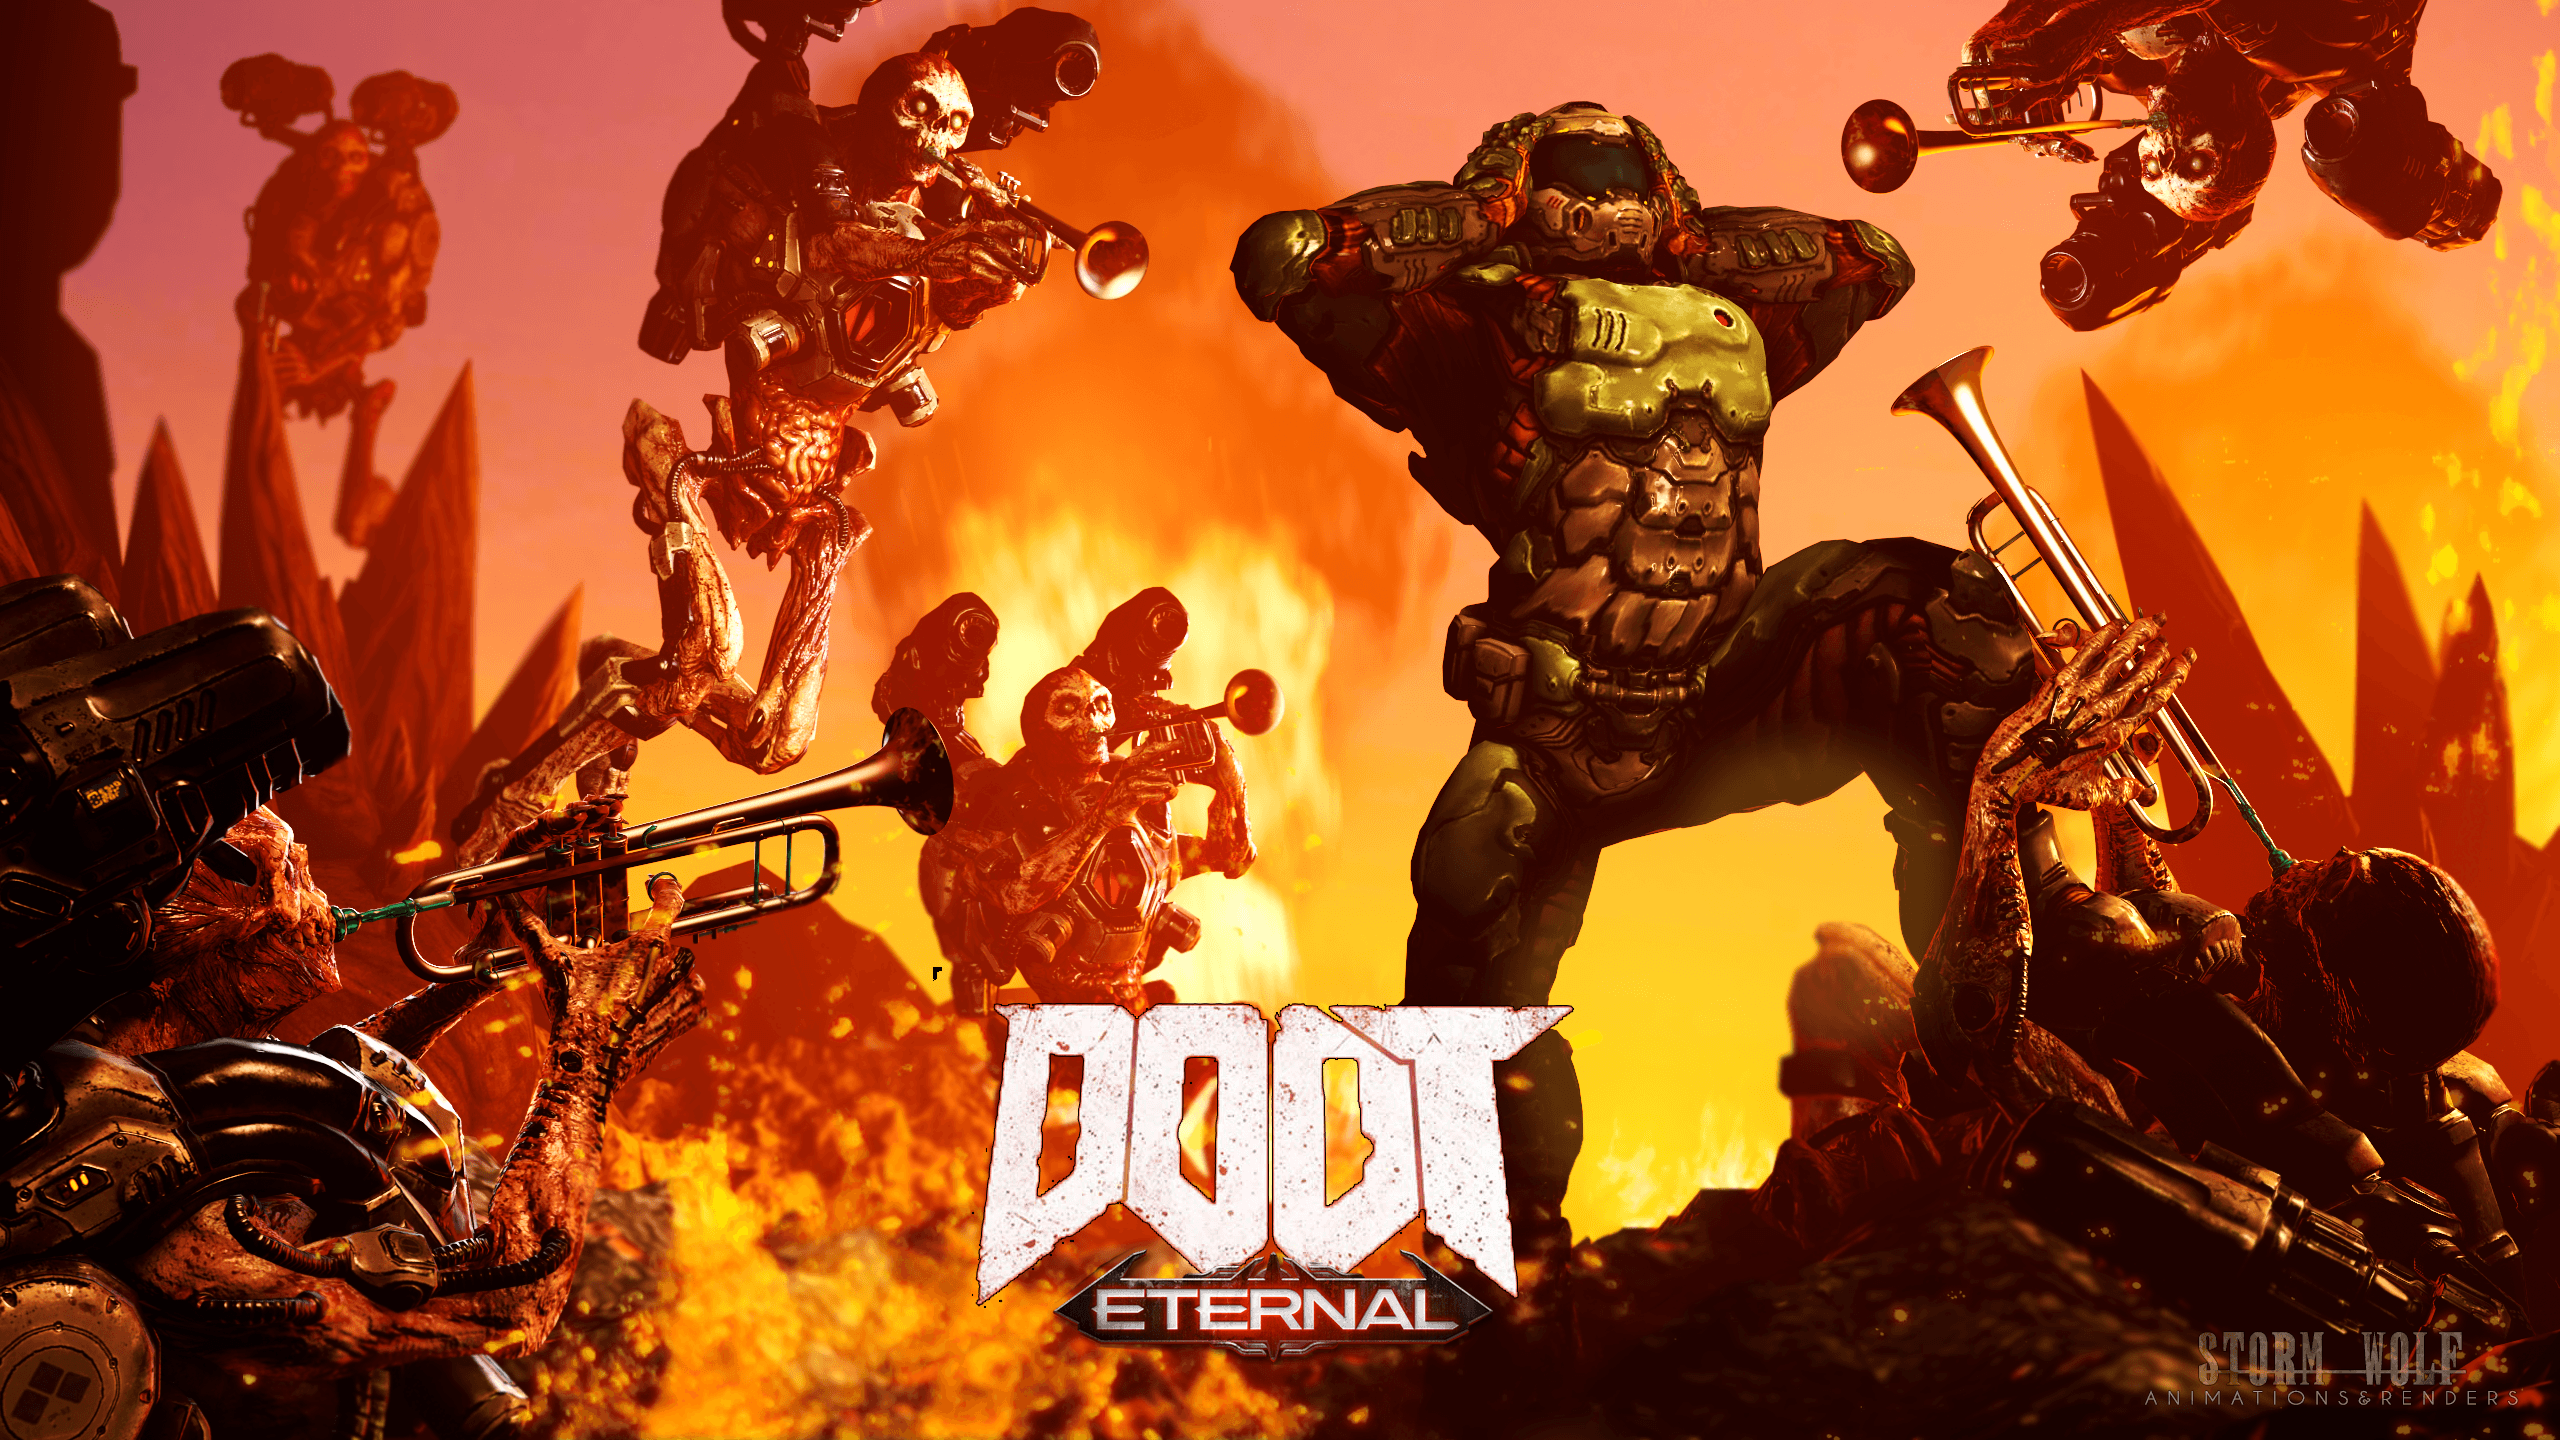 Eternal Doot! (some Fan Art I Made In SFM)